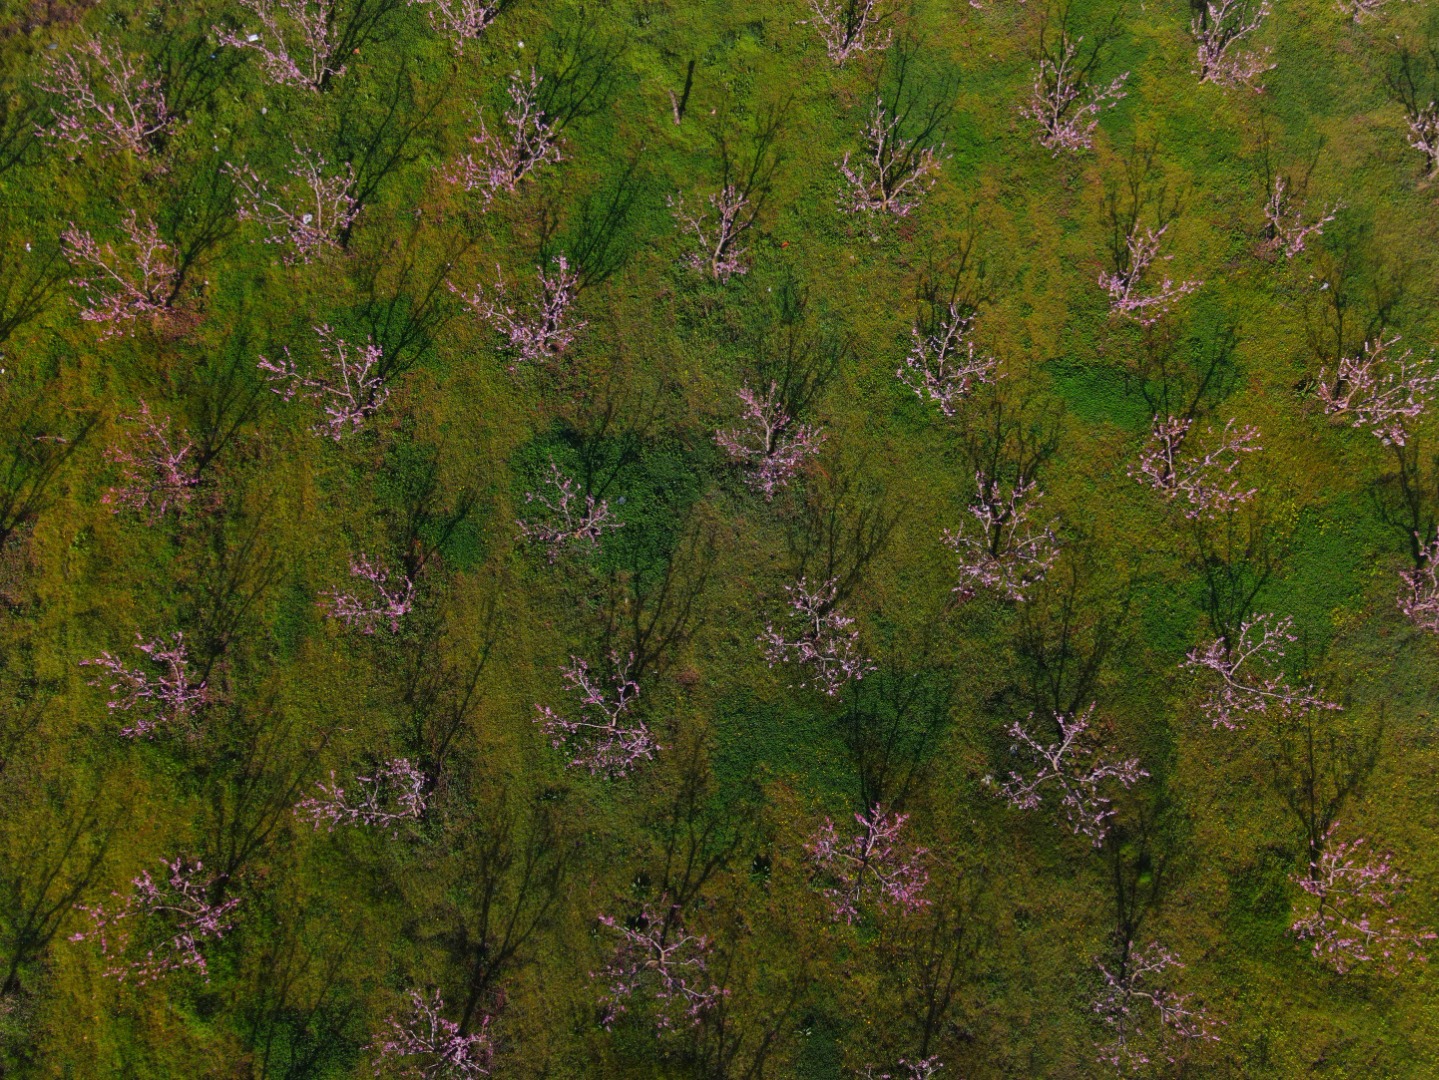 Çiçek açan meyve ağaçları kartpostallık görüntüler oluşturdu. Masalsı görüntüler dron ile görüntülendi 9